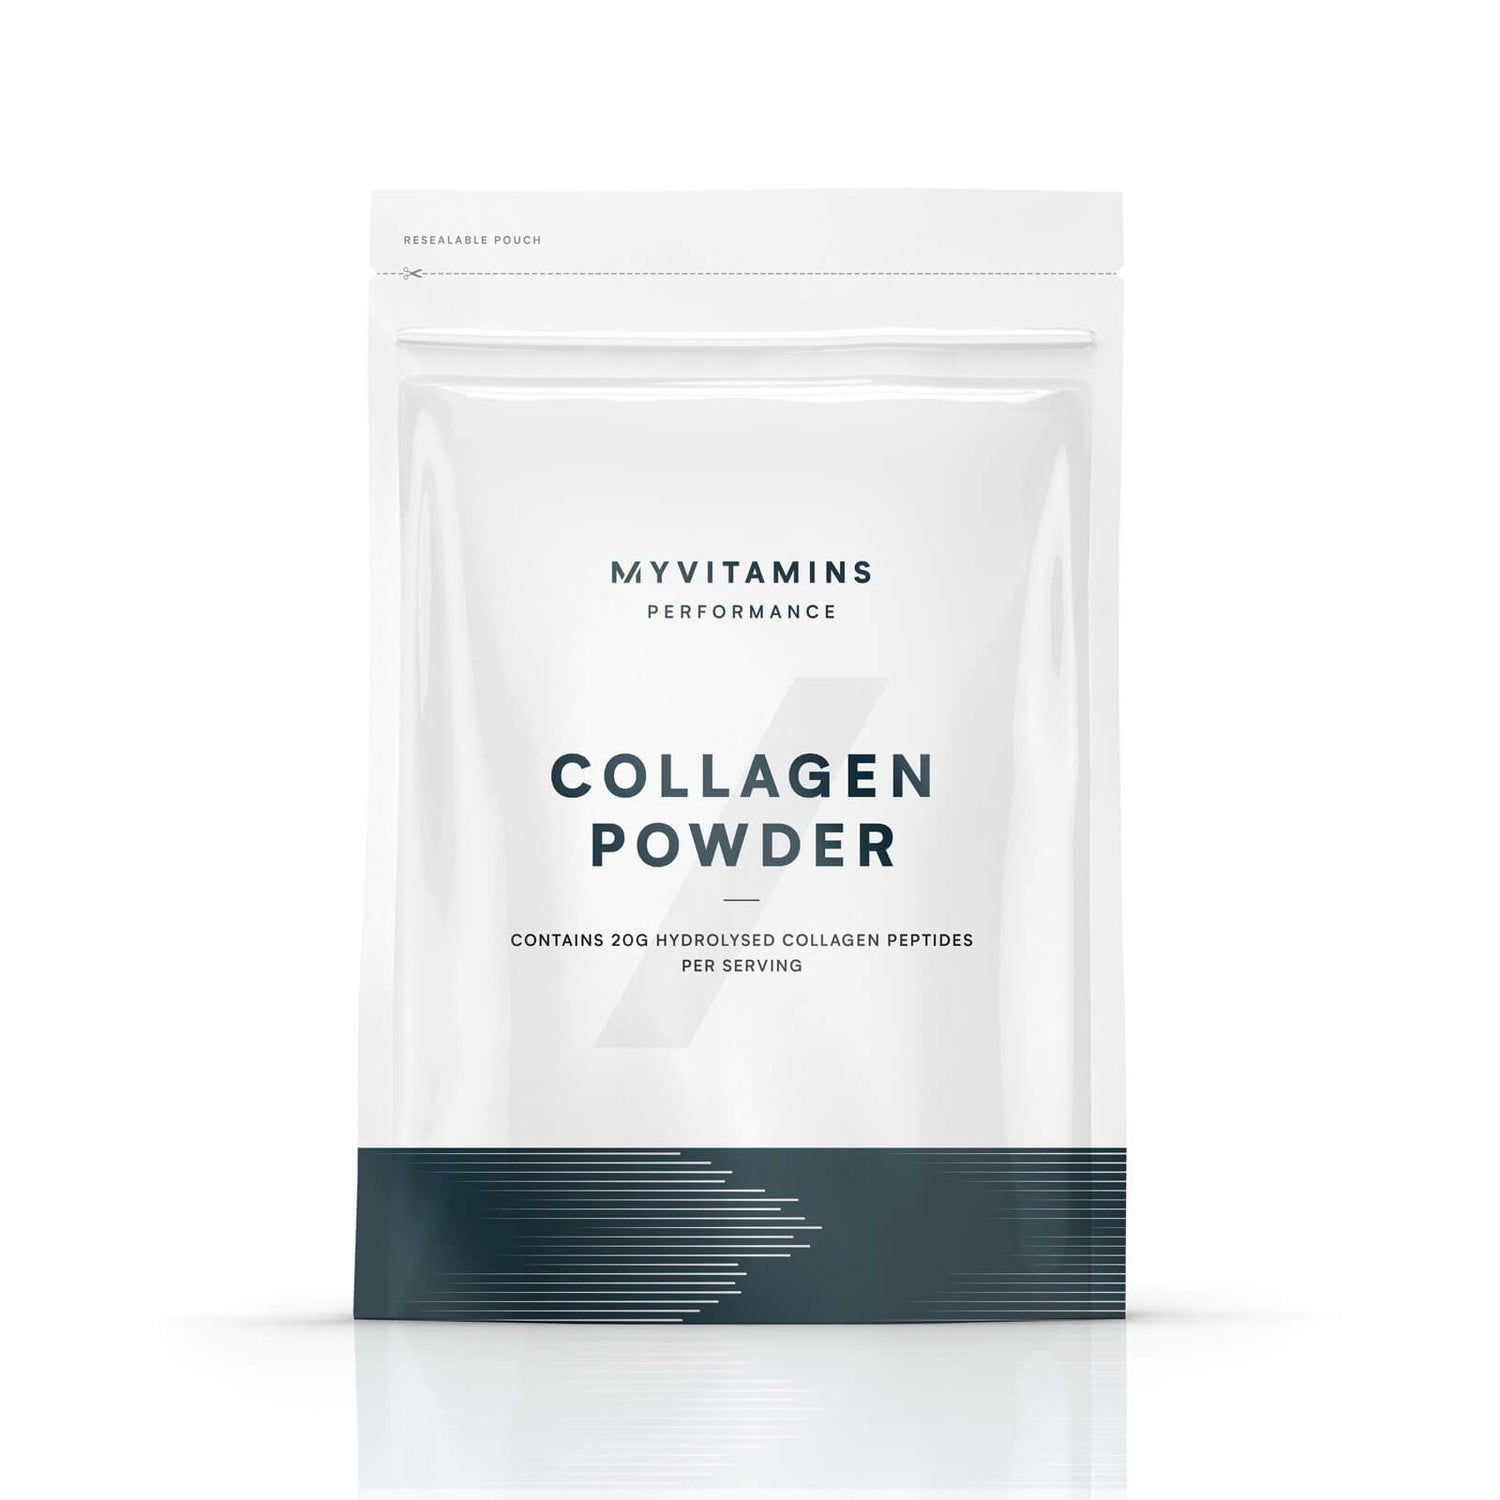 Myvitamins Collagen Powder - 250g - Unflavoured